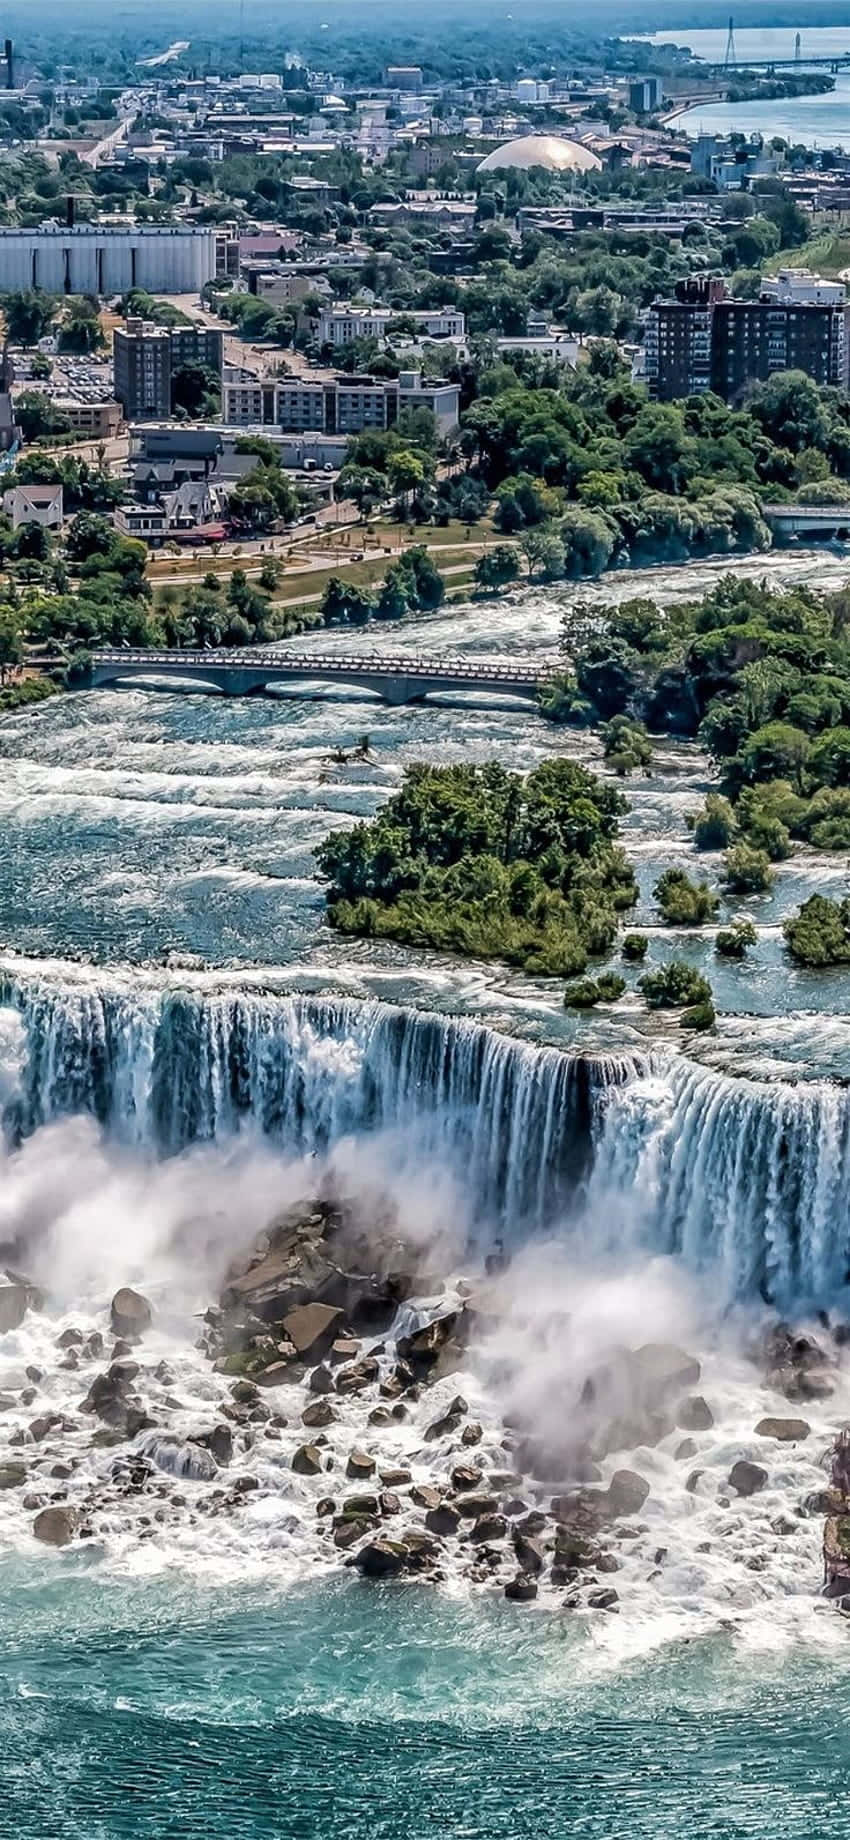 The Natural Beauty of Niagara Falls